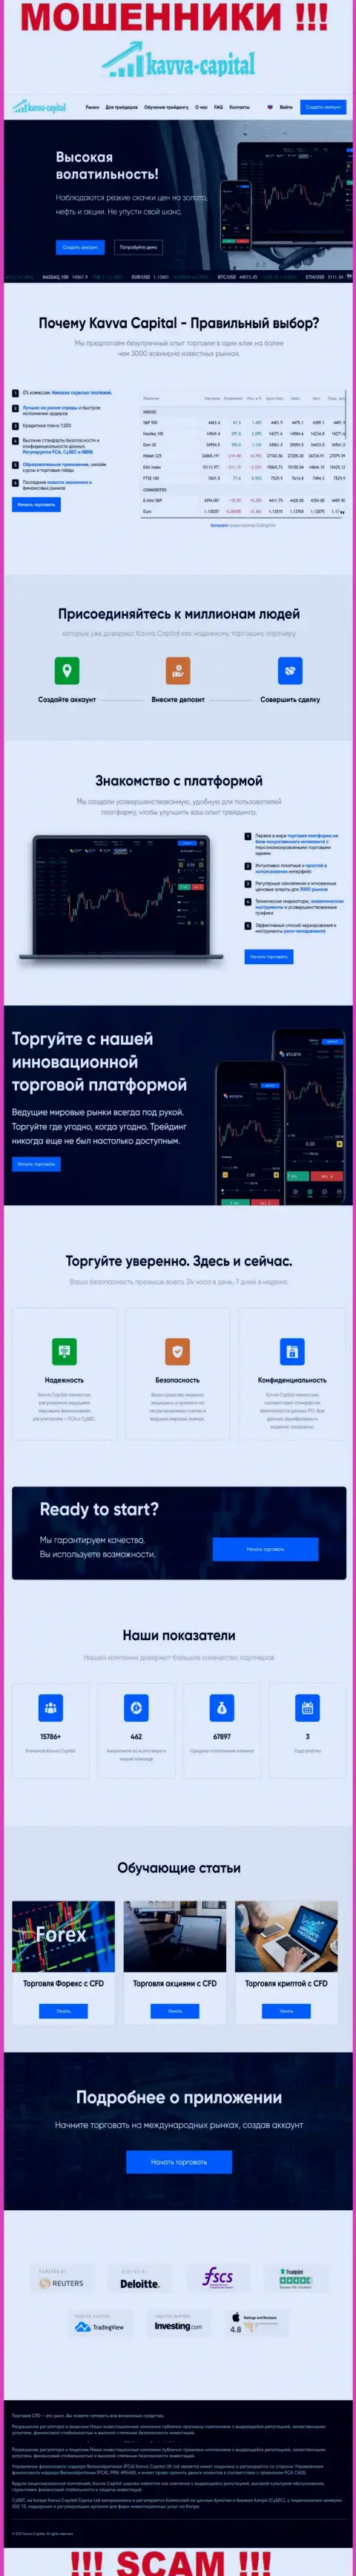 Официальный web-сервис мошенников КавваКапитал, заполненный информацией для лохов